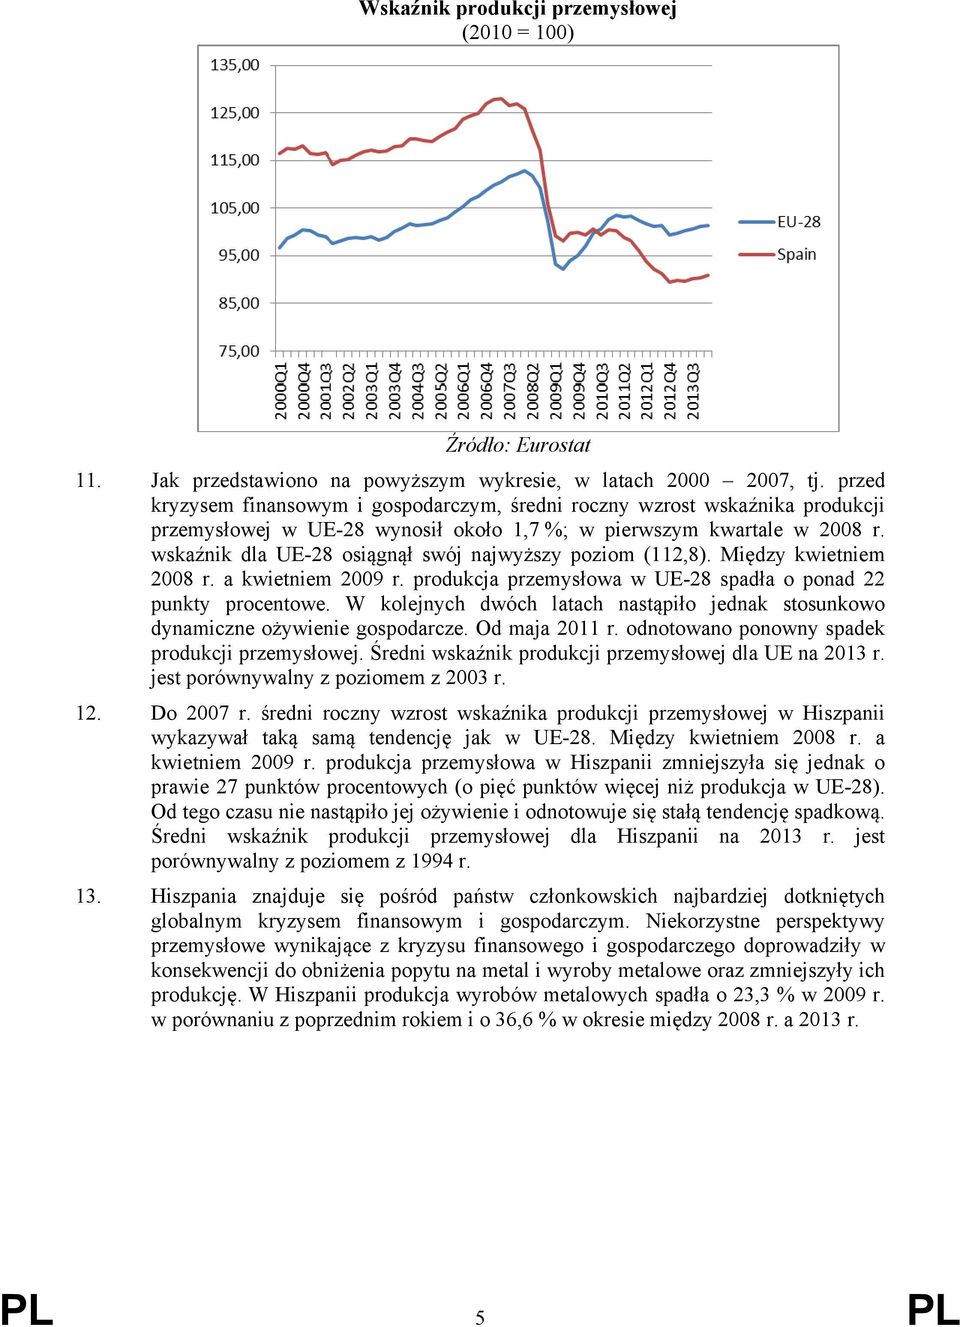 wskaźnik dla UE-28 osiągnął swój najwyższy poziom (112,8). Między kwietniem 2008 r. a kwietniem 2009 r. produkcja przemysłowa w UE-28 spadła o ponad 22 punkty procentowe.